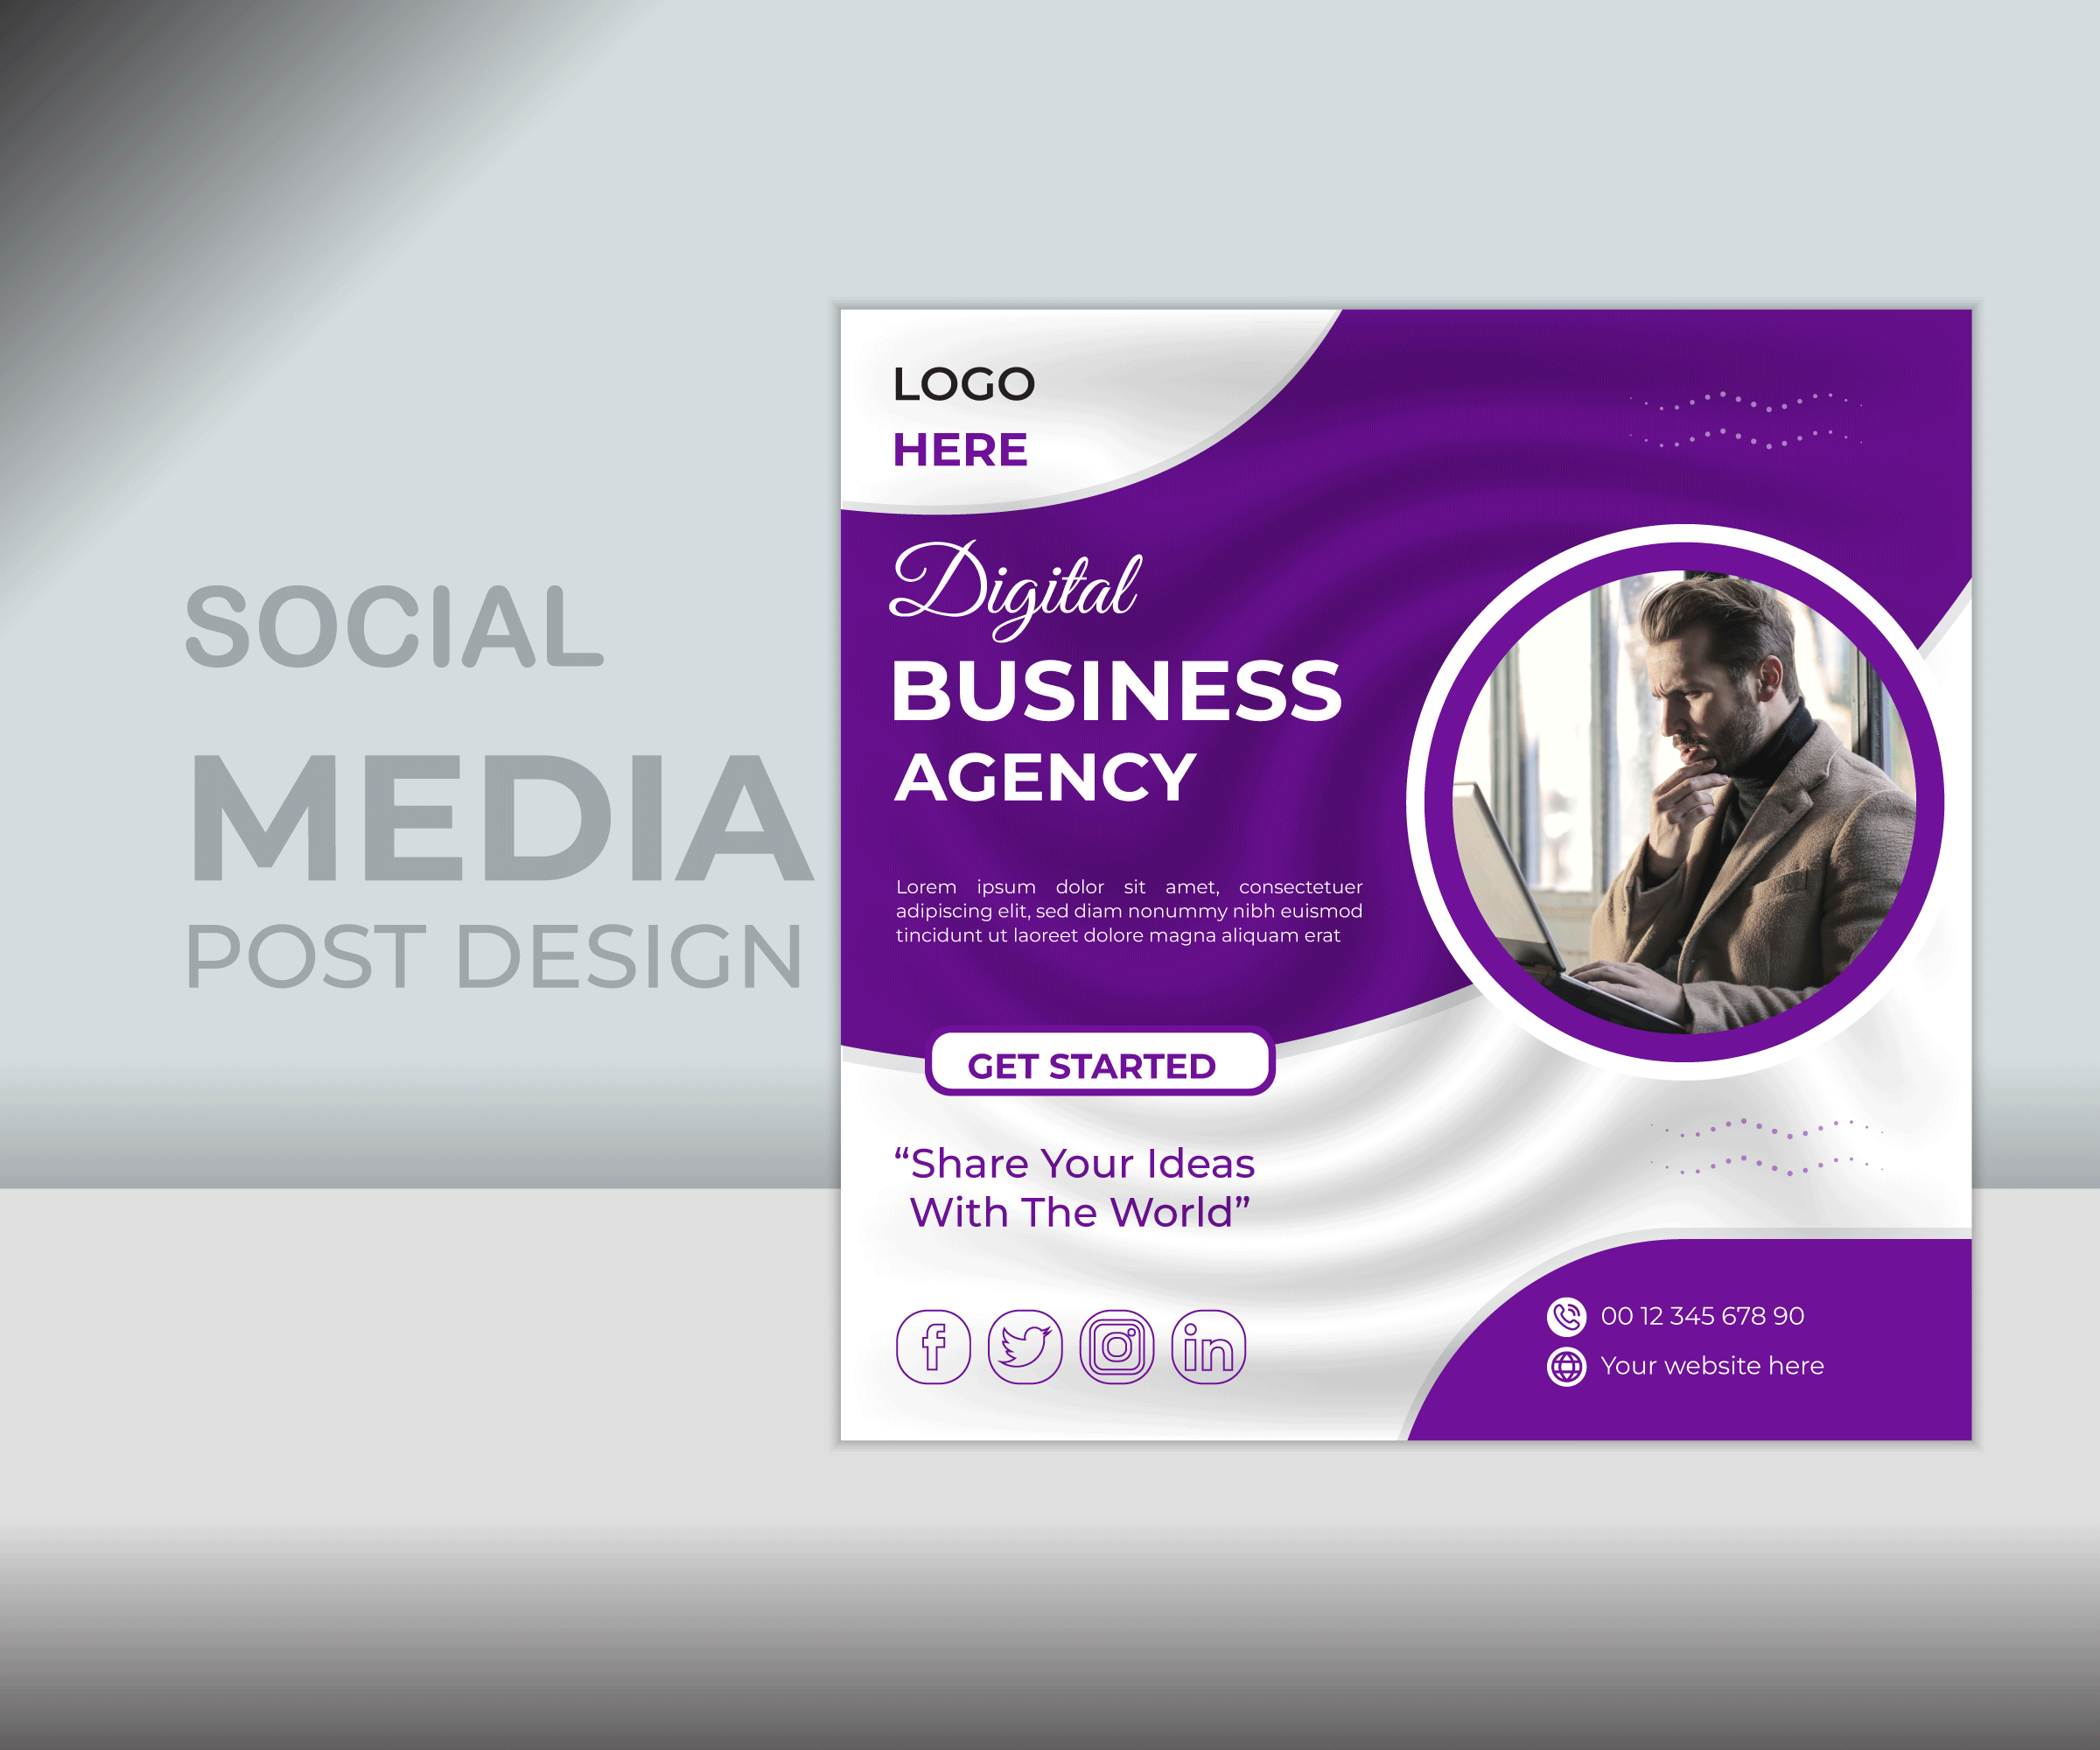 social media post design agency business design digital graphic design marketing media social social media